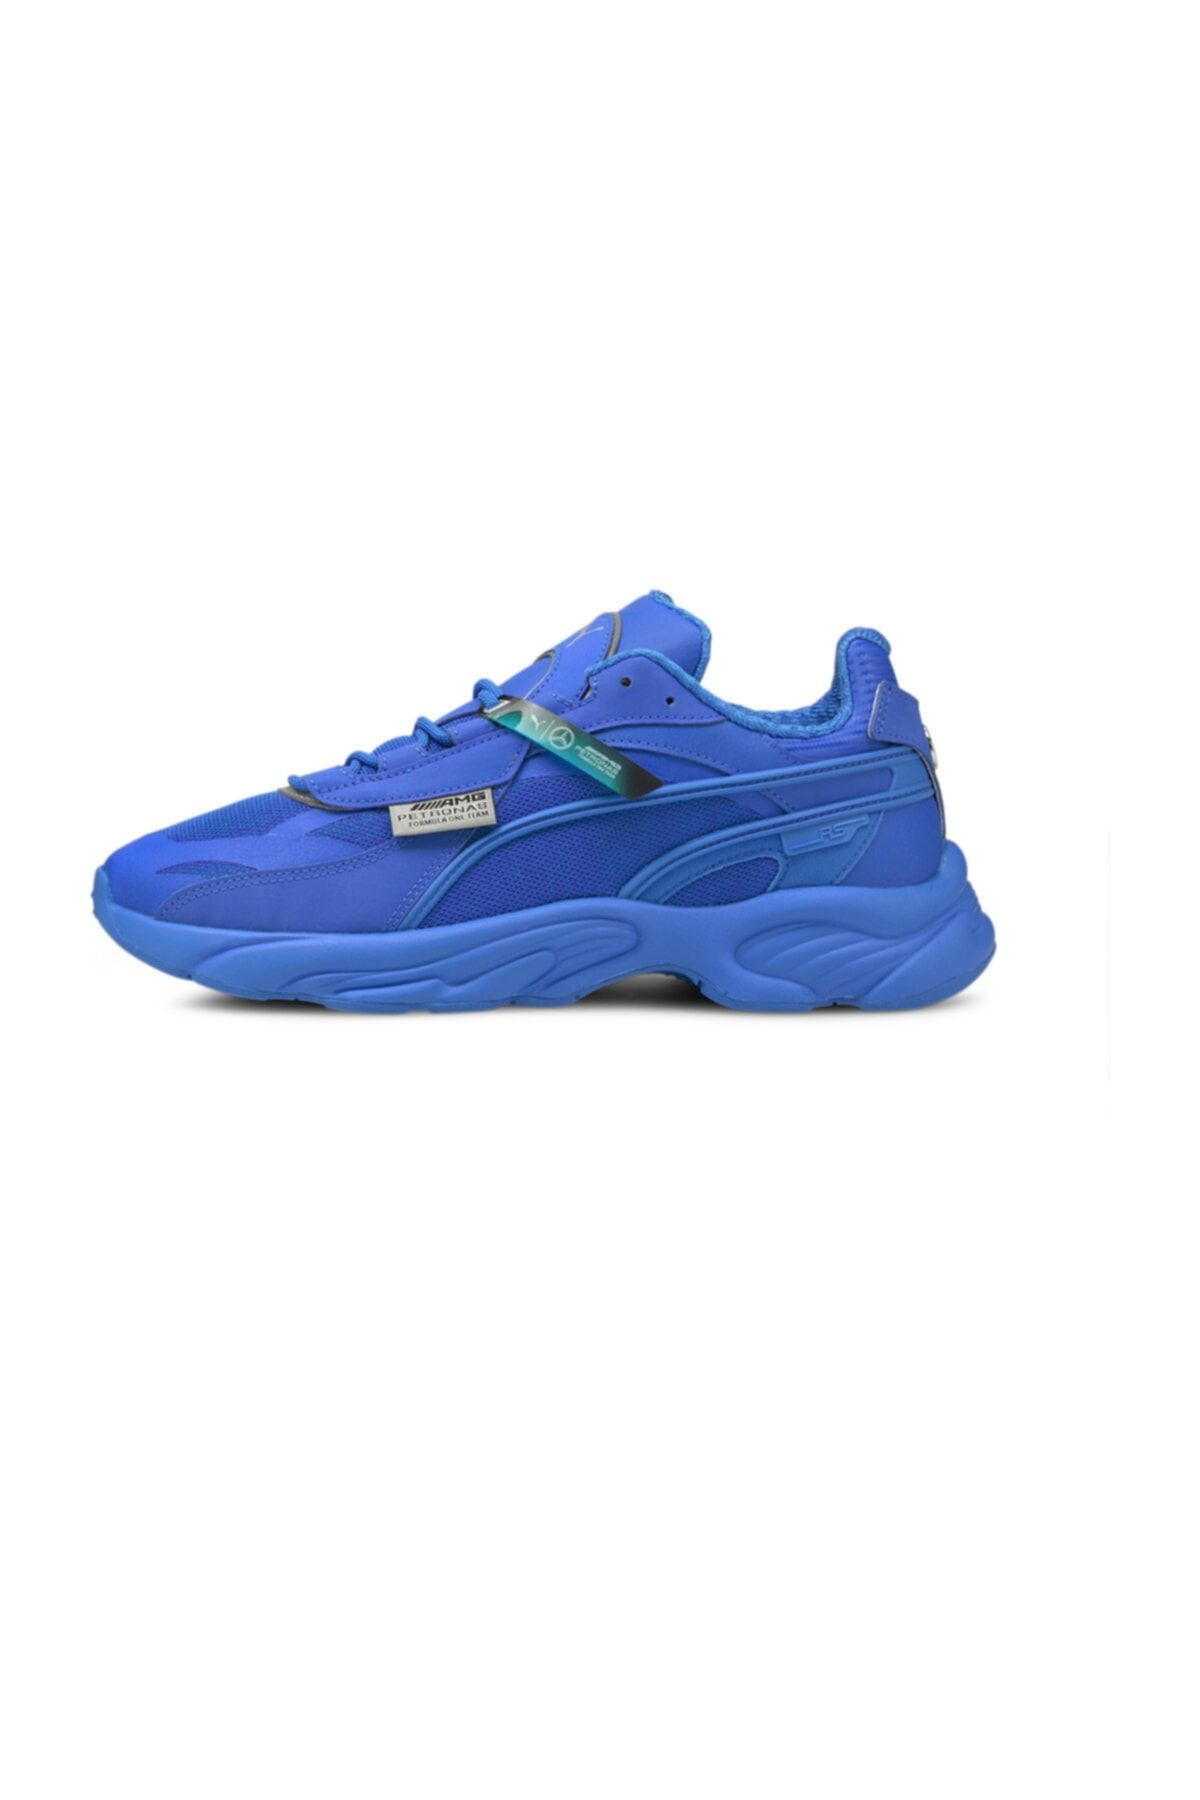 Puma Mapf1 Rs-connect Erkek Günlük Ayakkabı 30684202 Mavi